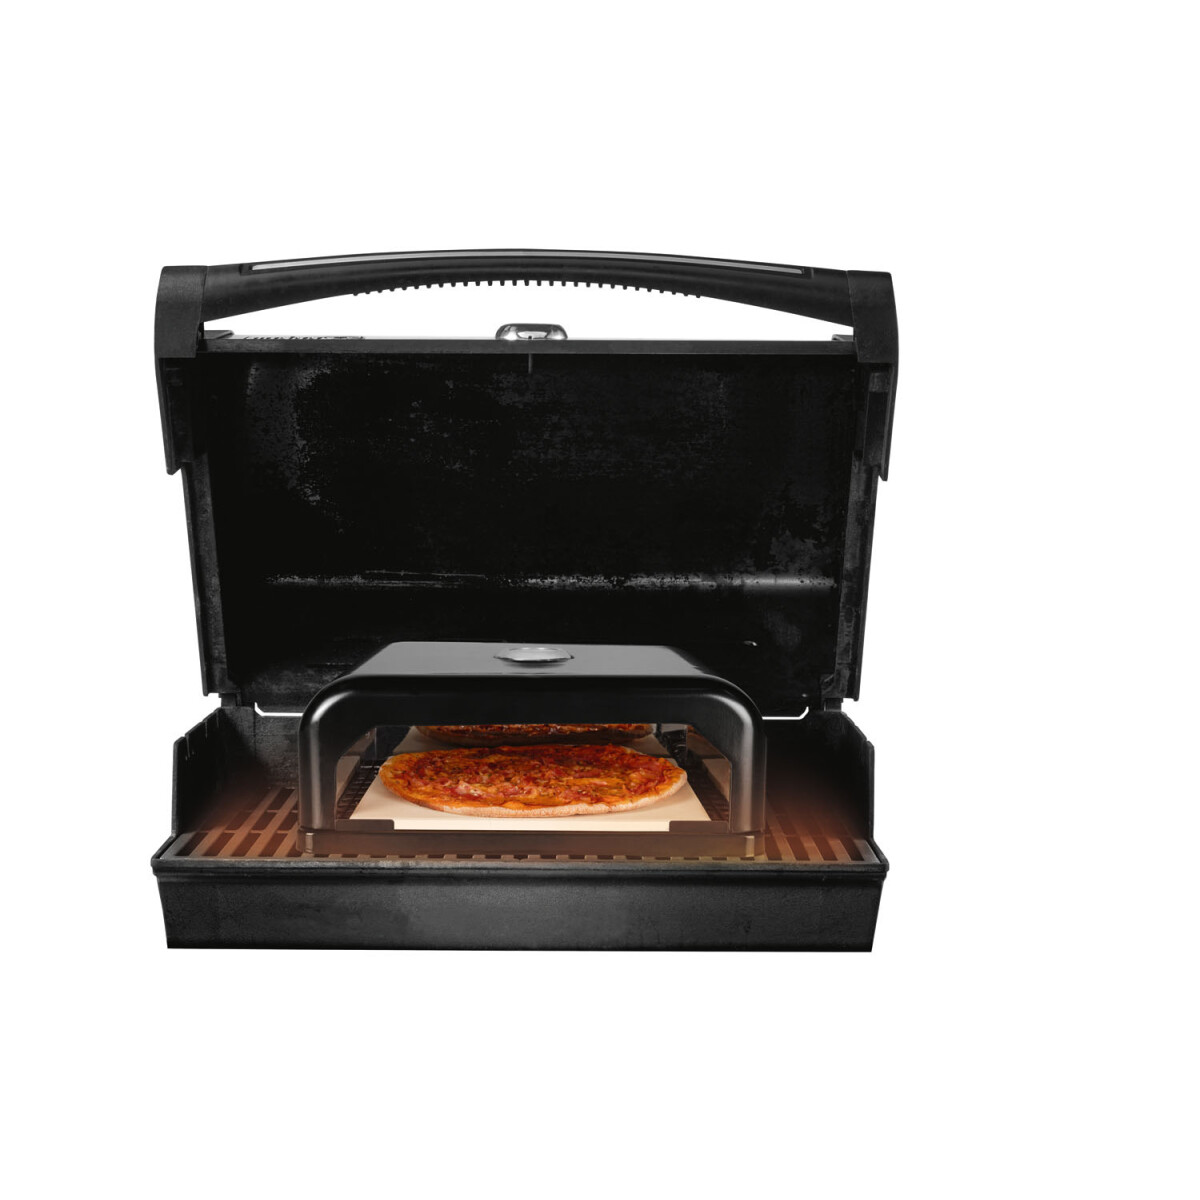 GRILLMEISTER Pizzaofen-Grillaufsatz, emailliert, mit Thermostat - B-Ware  neuwertig, 53,99 €